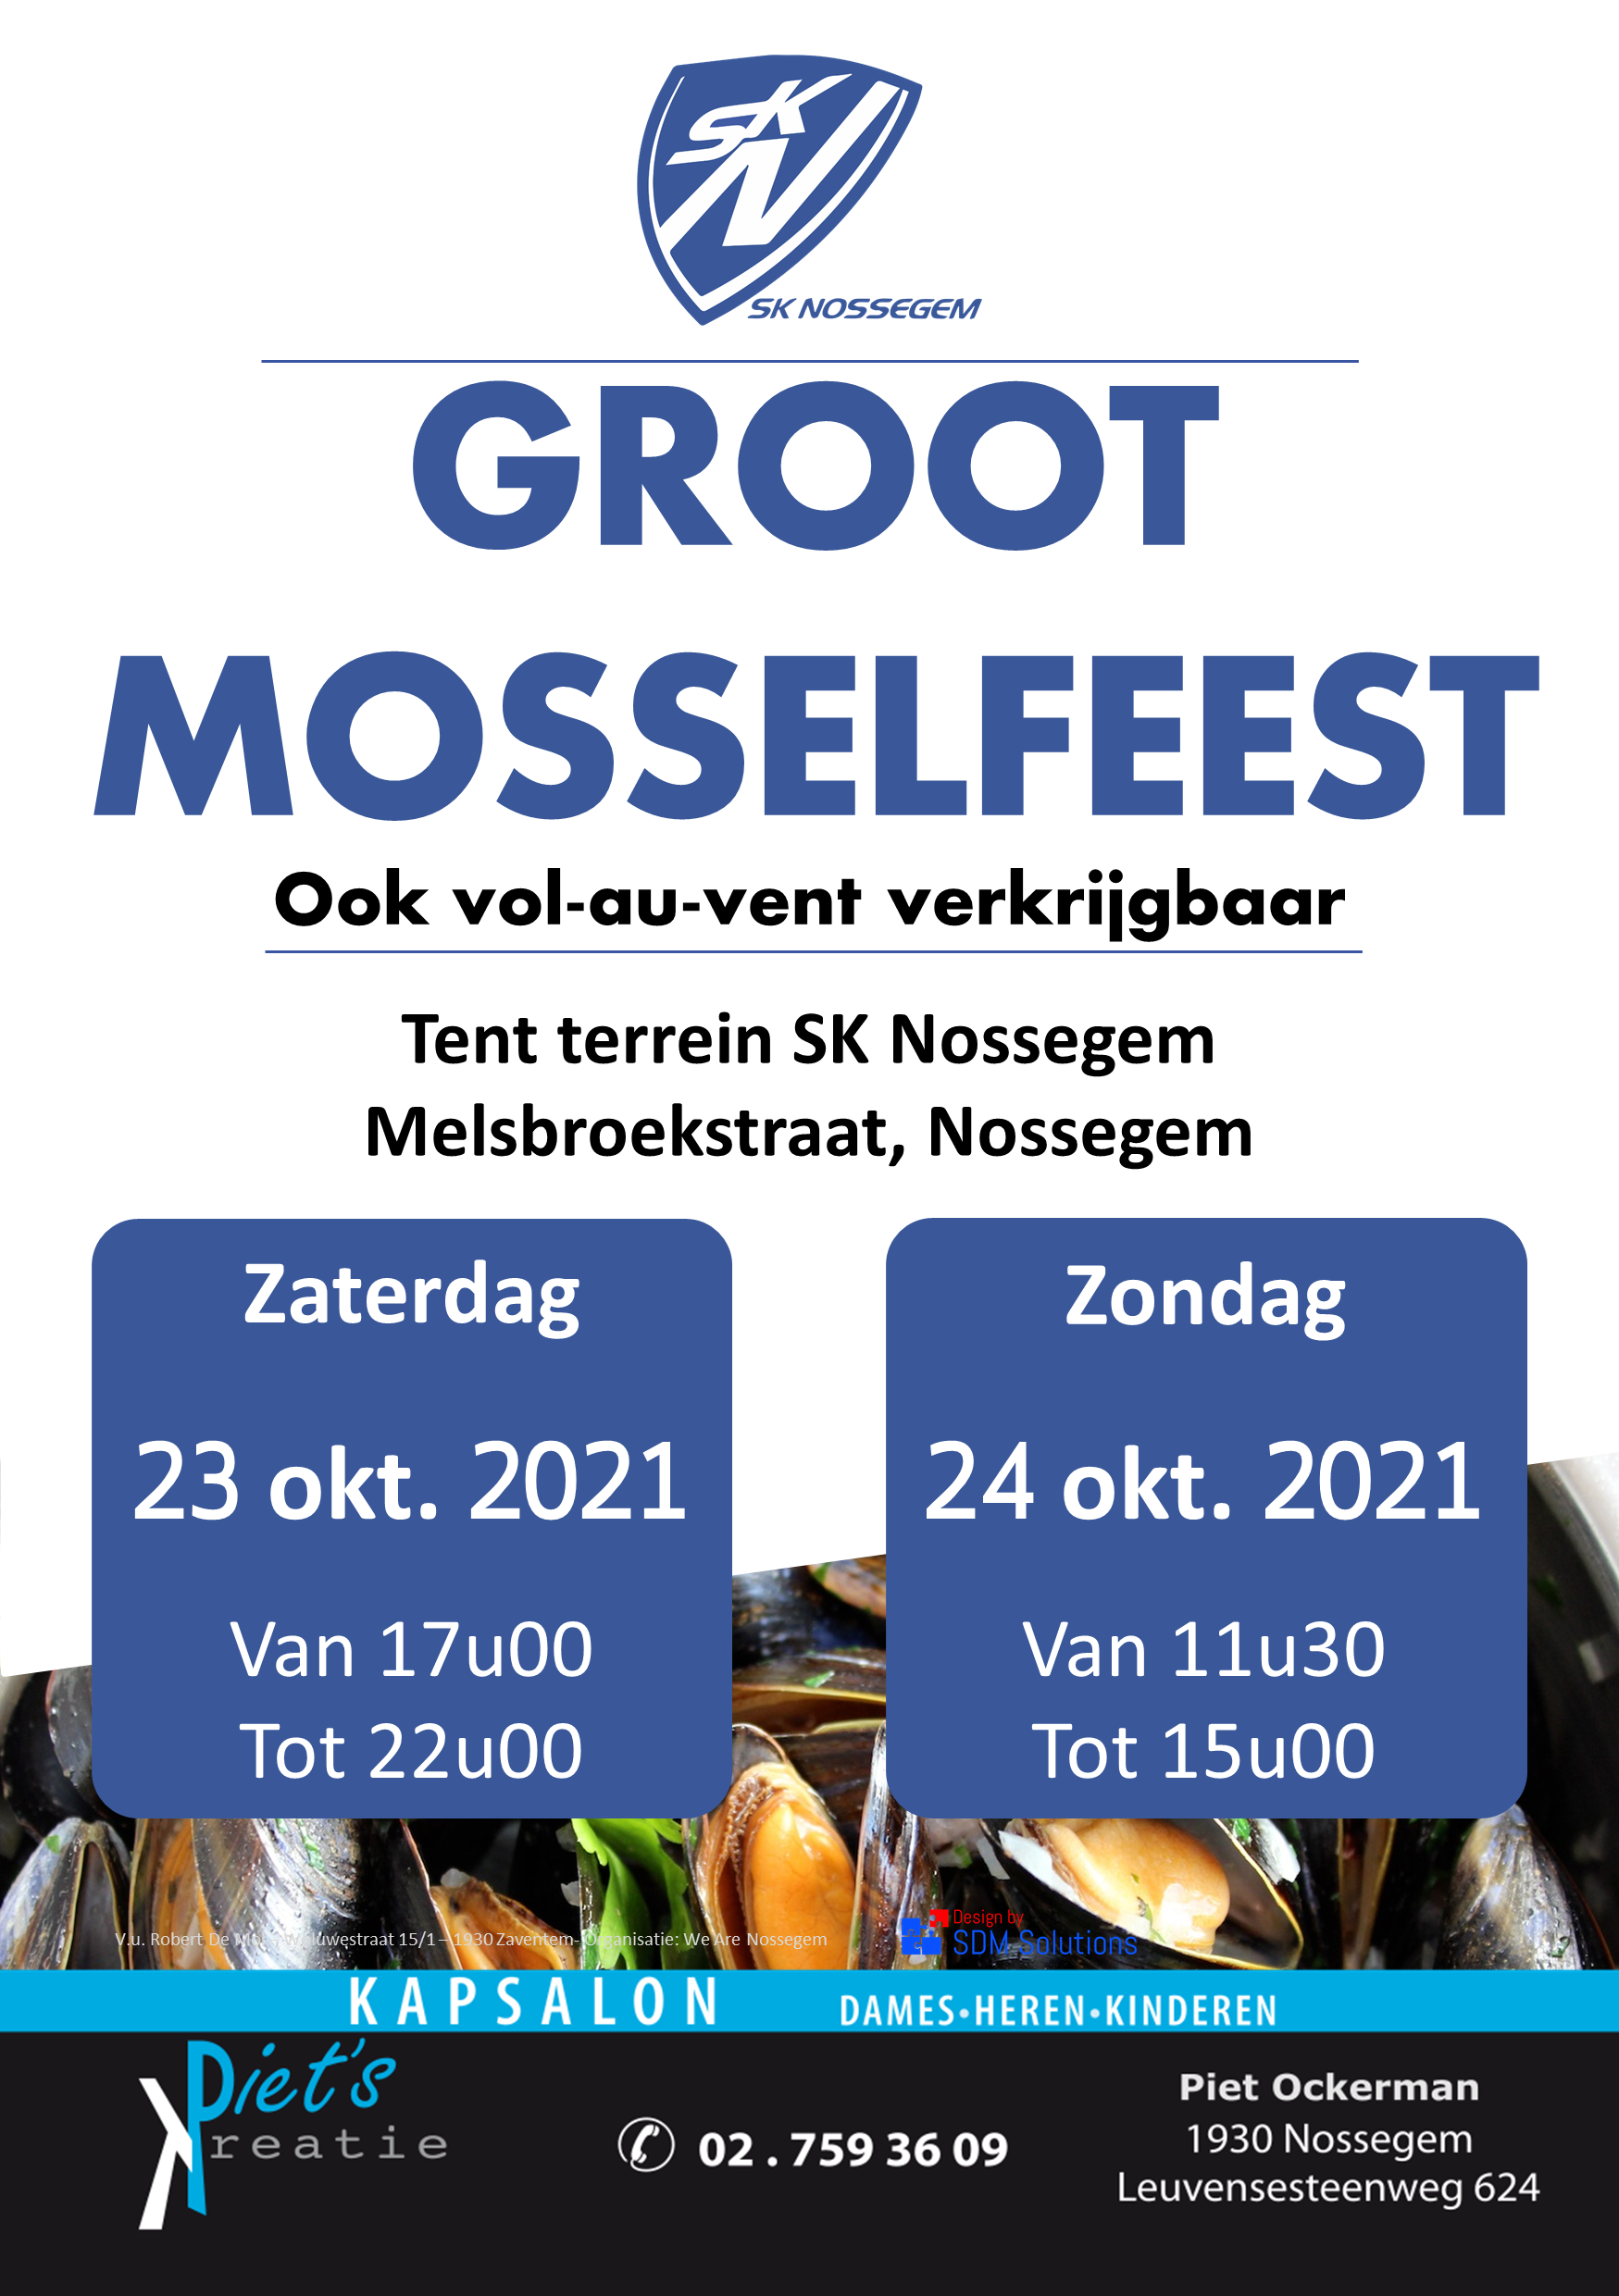 Groot Mosselfeest SK Nossegem op zaterdag 23 en zondag 24 oktober